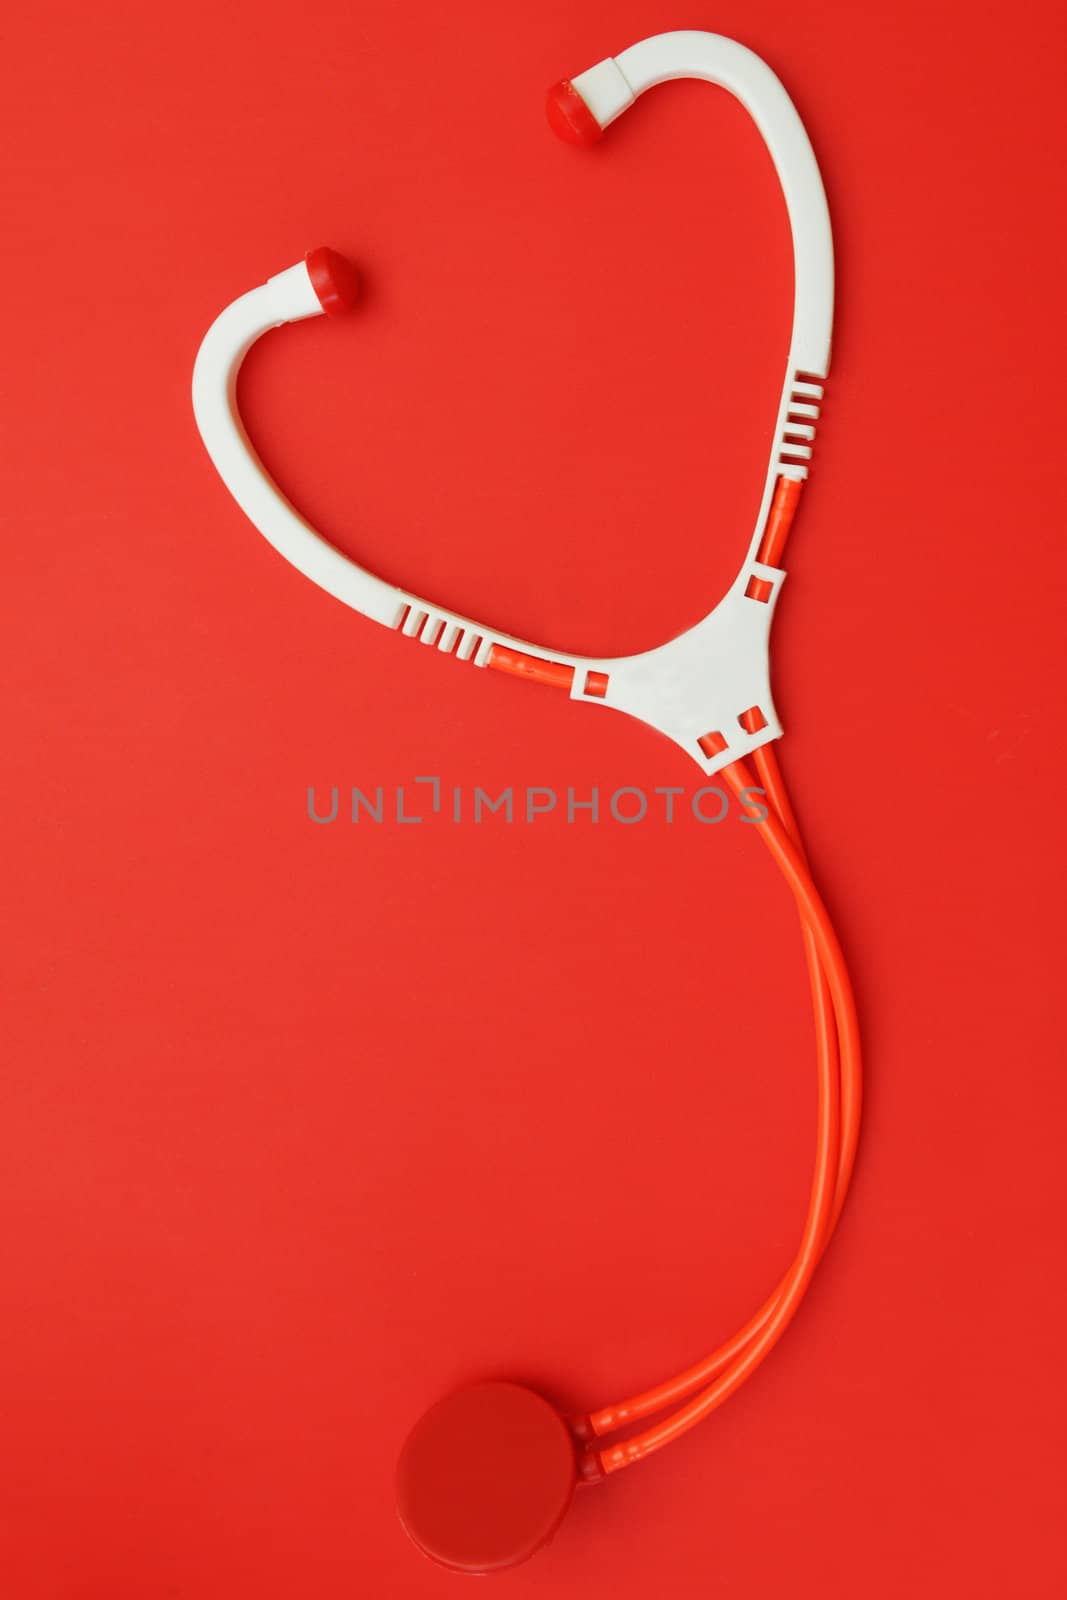 Stethoscope by Yaurinko